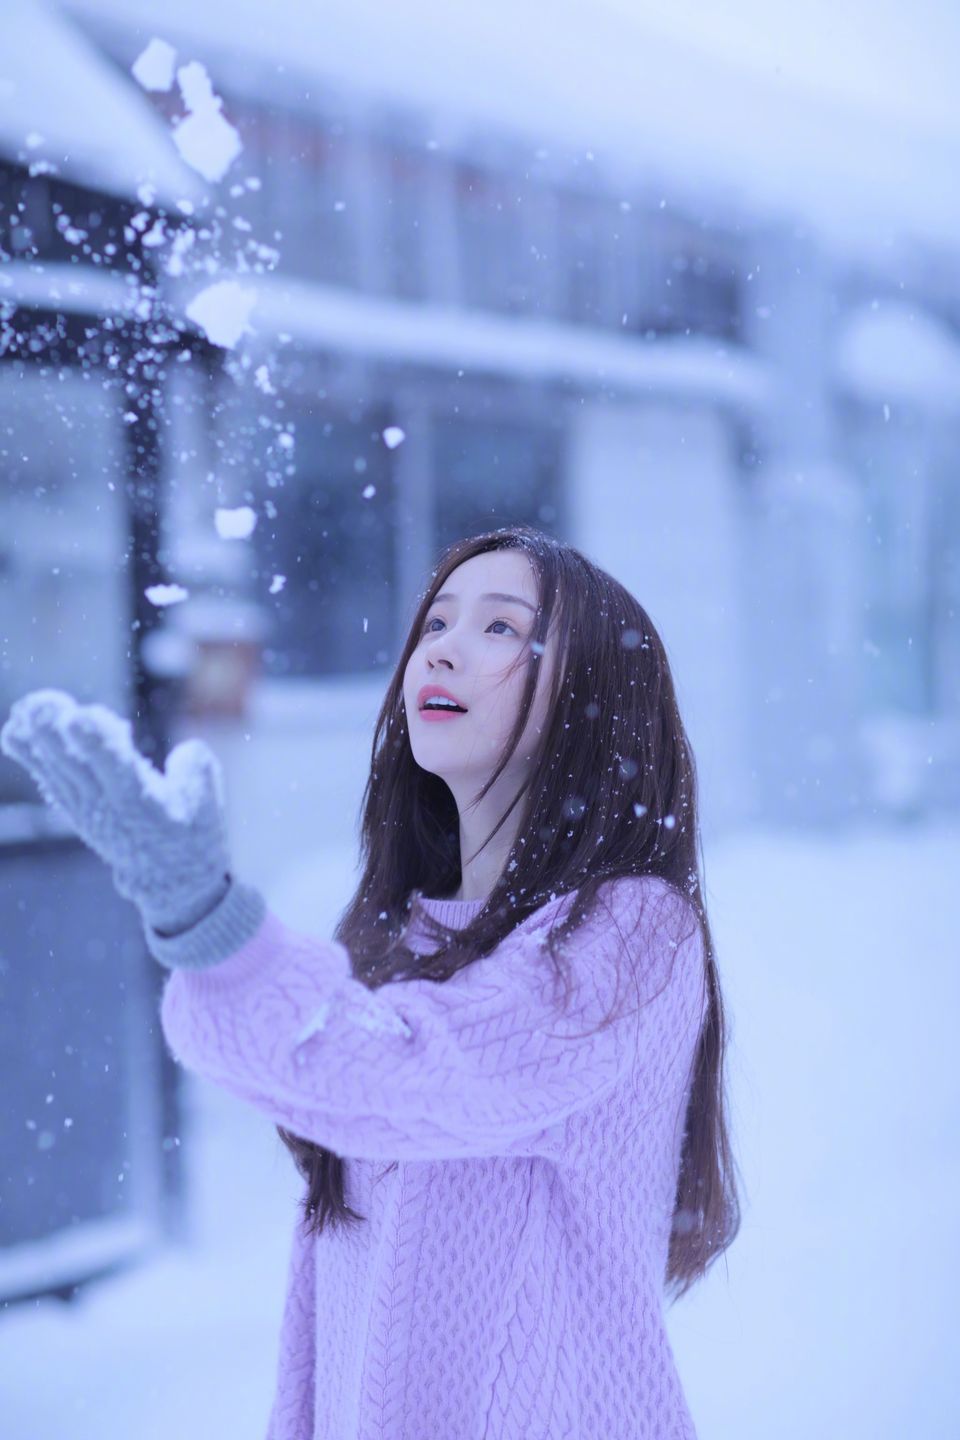 冬天的雪 紫色毛衣周二珂 竖屏长发美女 唯美手机桌面壁纸 4k-PixStock 源像素